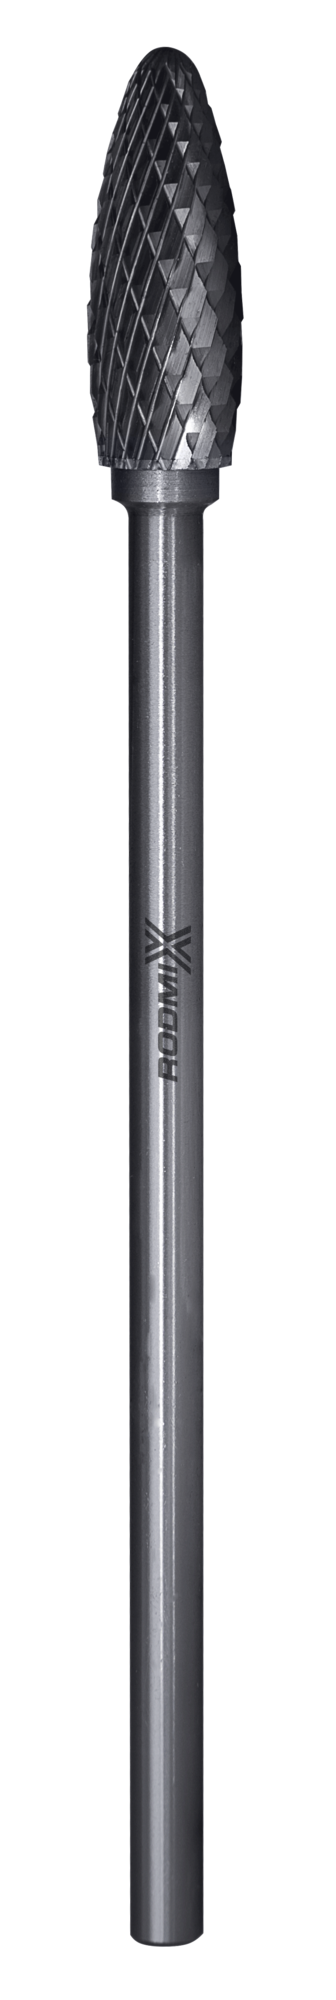 Твердосплавная борфреза по металлу тип H пламевидная удлиненная 6х18 L150 М6 мм двойная насечка 1